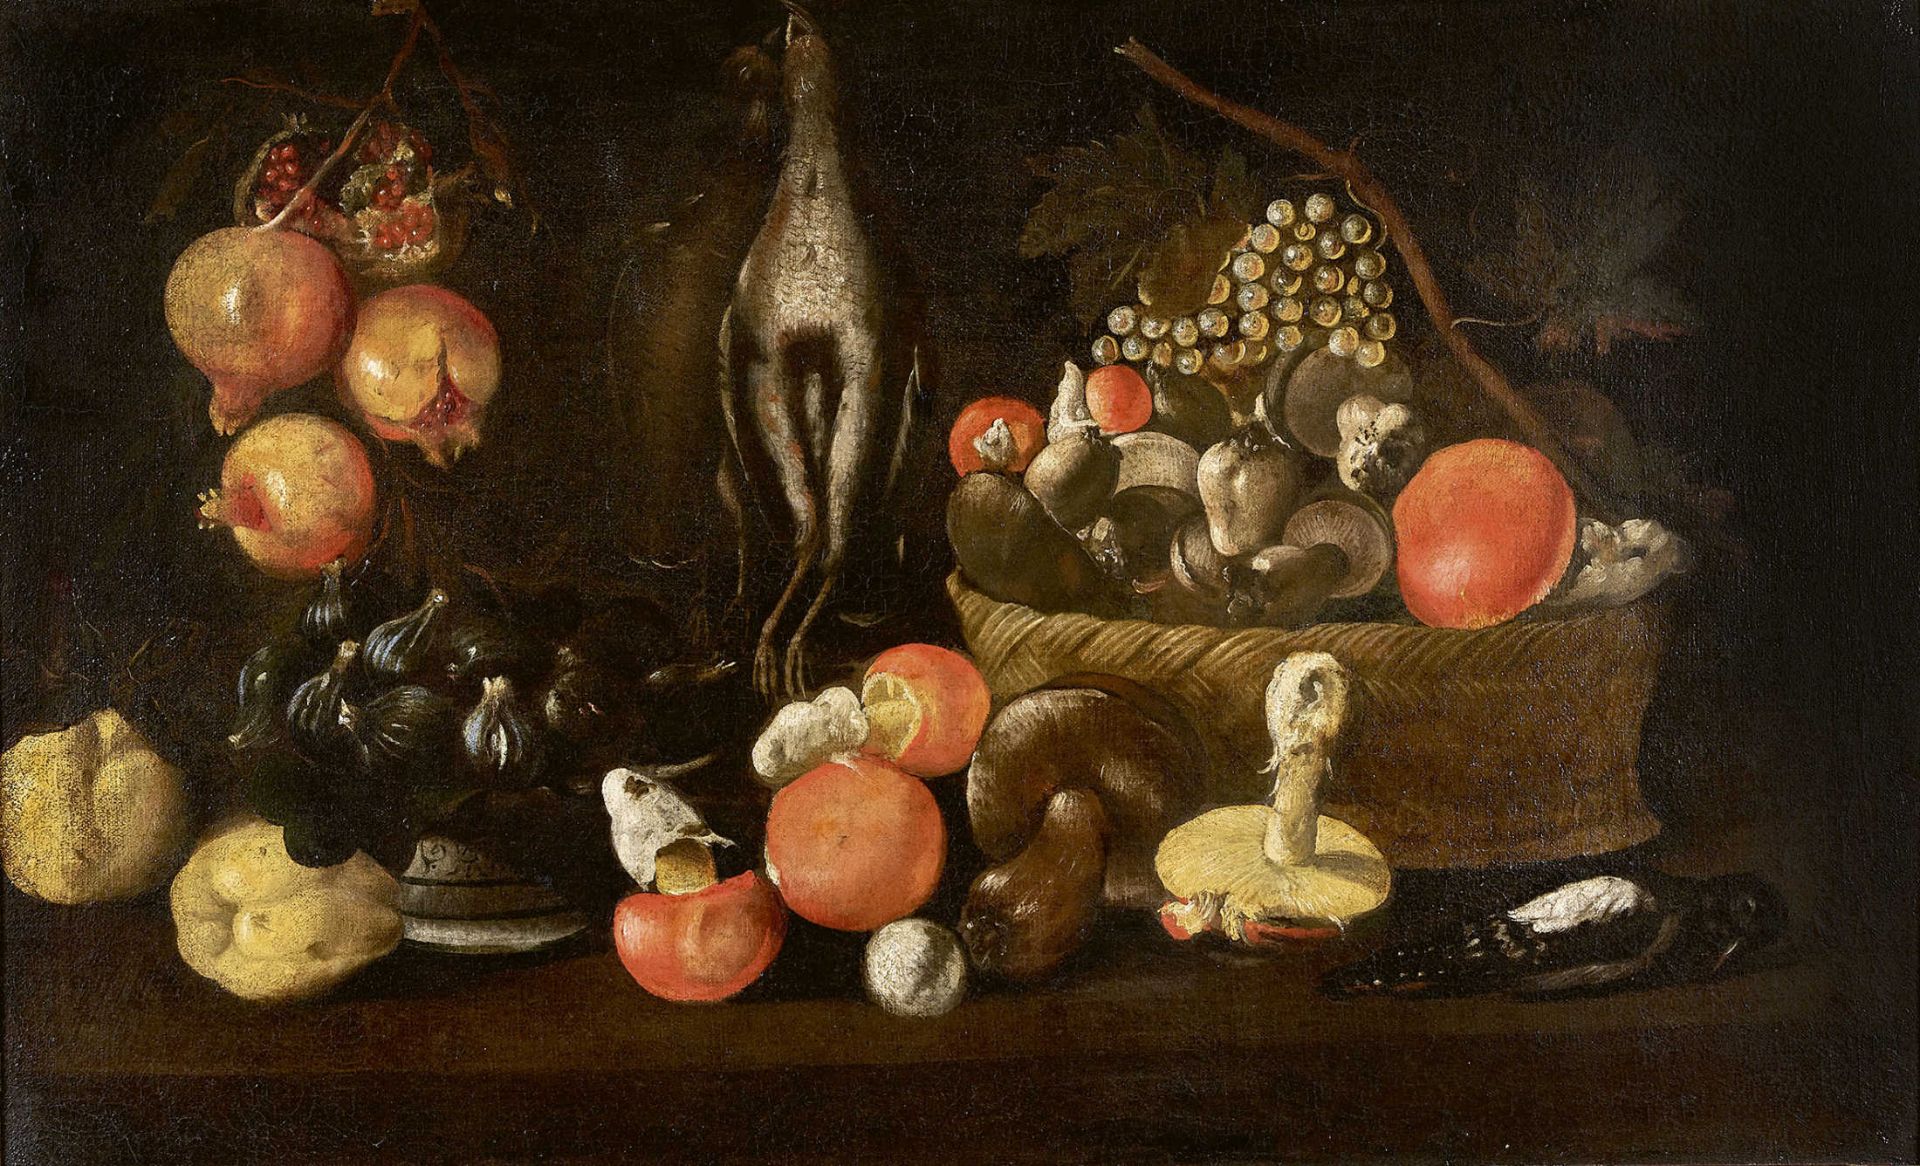 FORTE, LUCANeapel um 1600 - 1670UmkreisHerbststillleben mit Pilzen, Früchten und erlegten Vögeln.